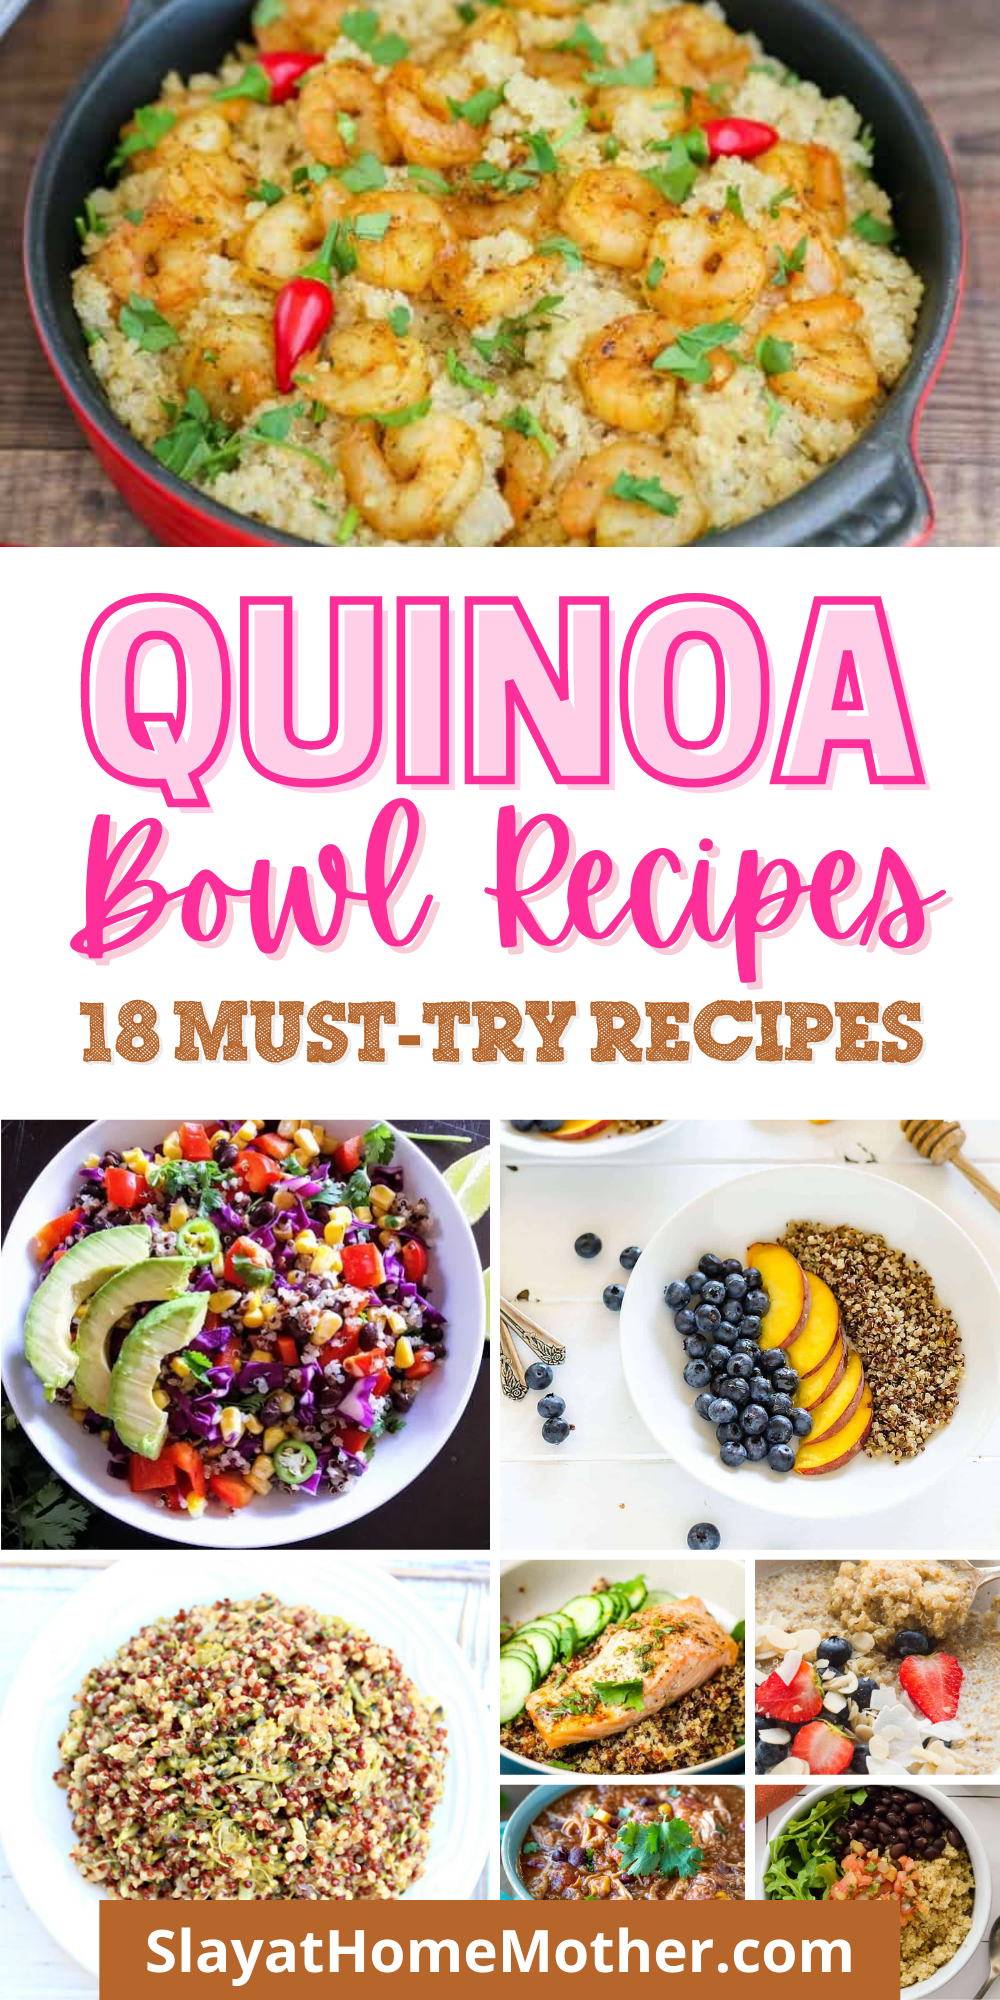 quinoa bowl recipes pin